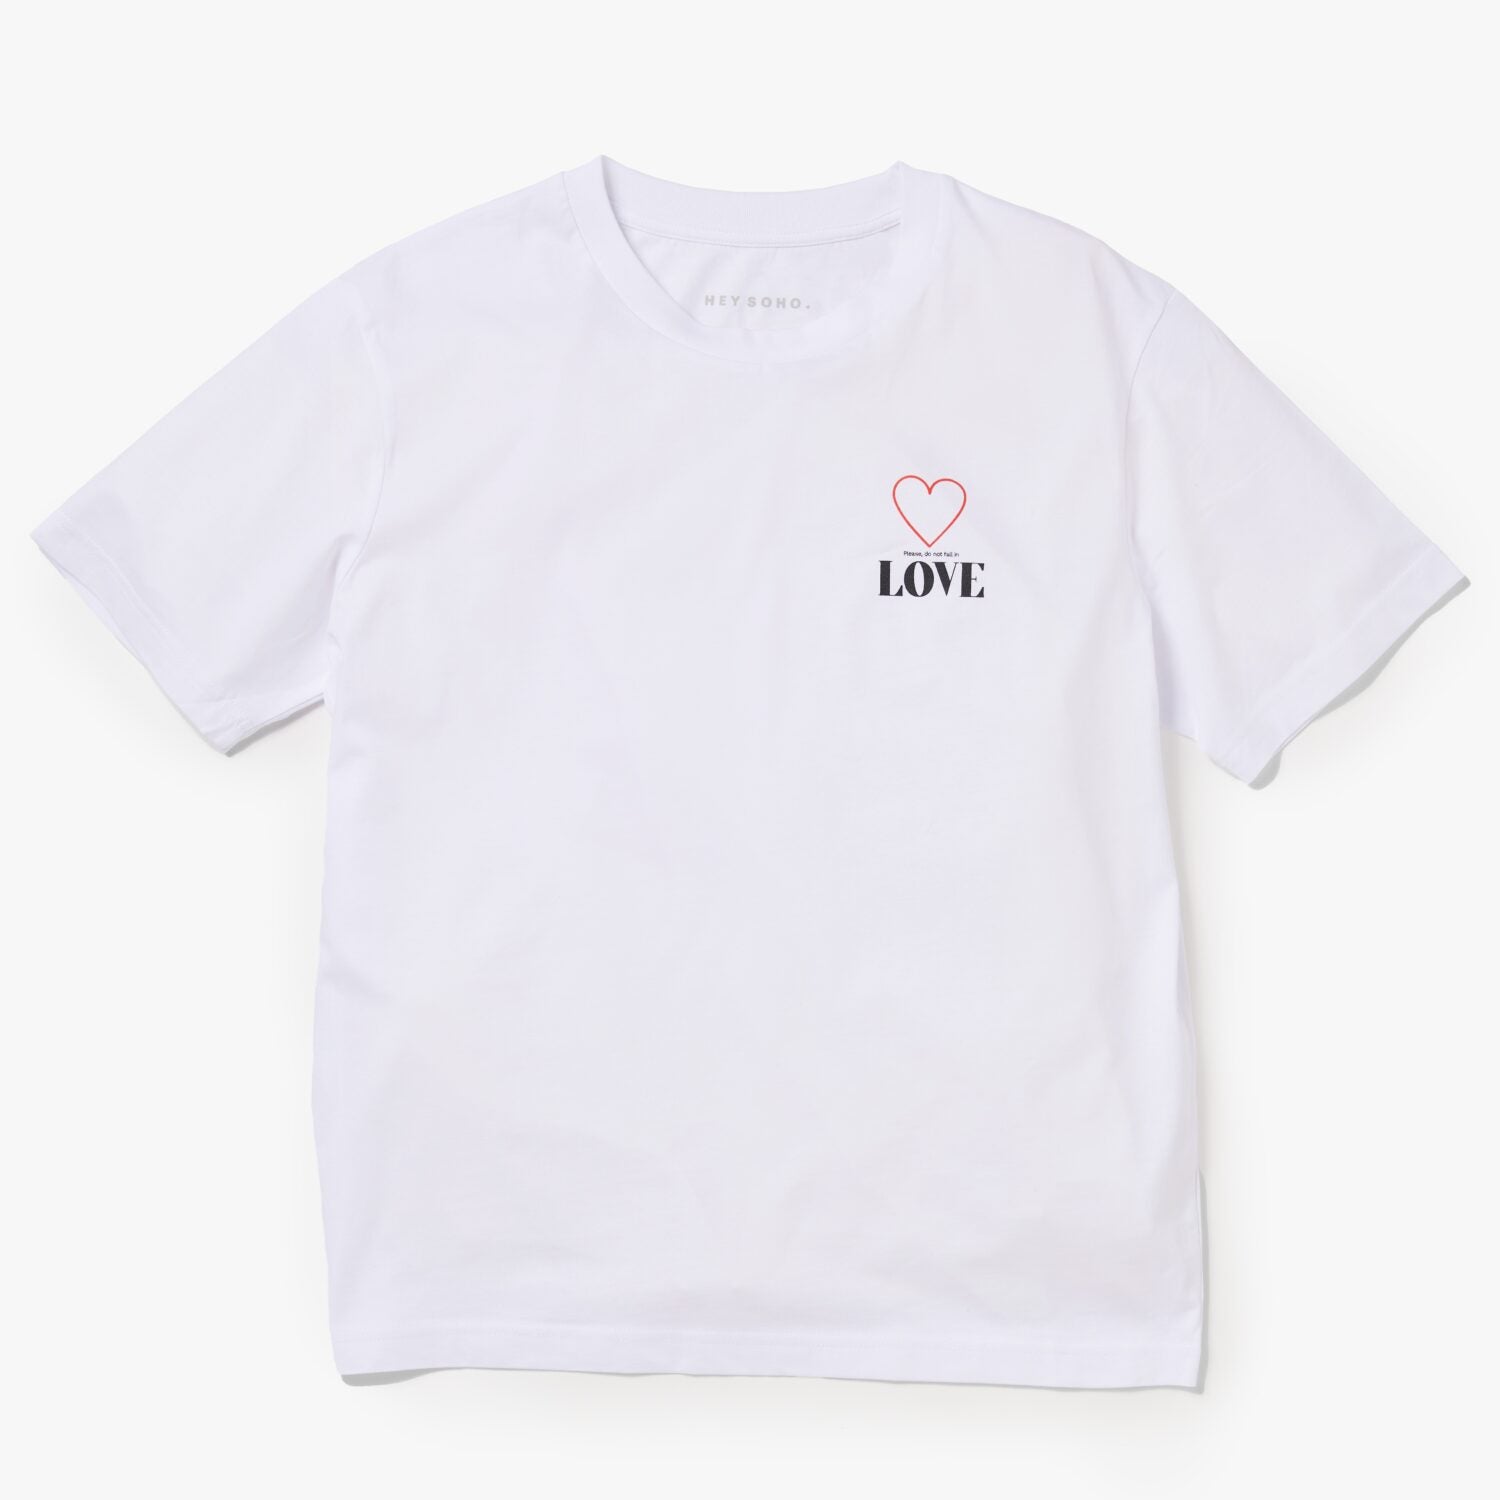 hey soho T-Shirt Love - Please, do not fall in